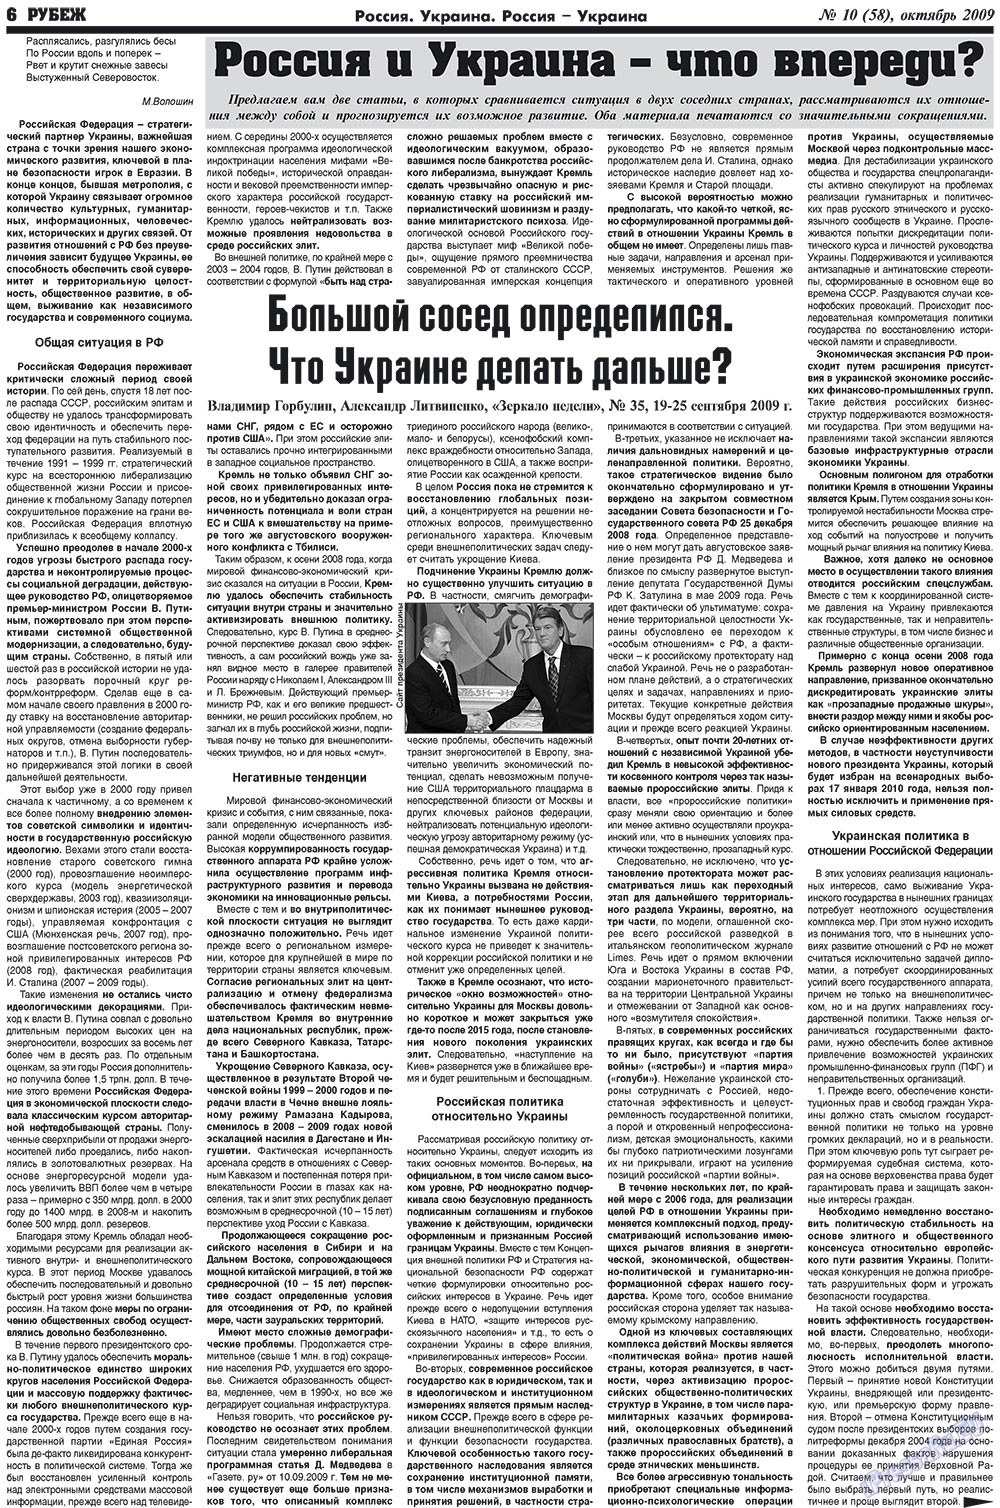 Рубеж (газета). 2009 год, номер 10, стр. 6